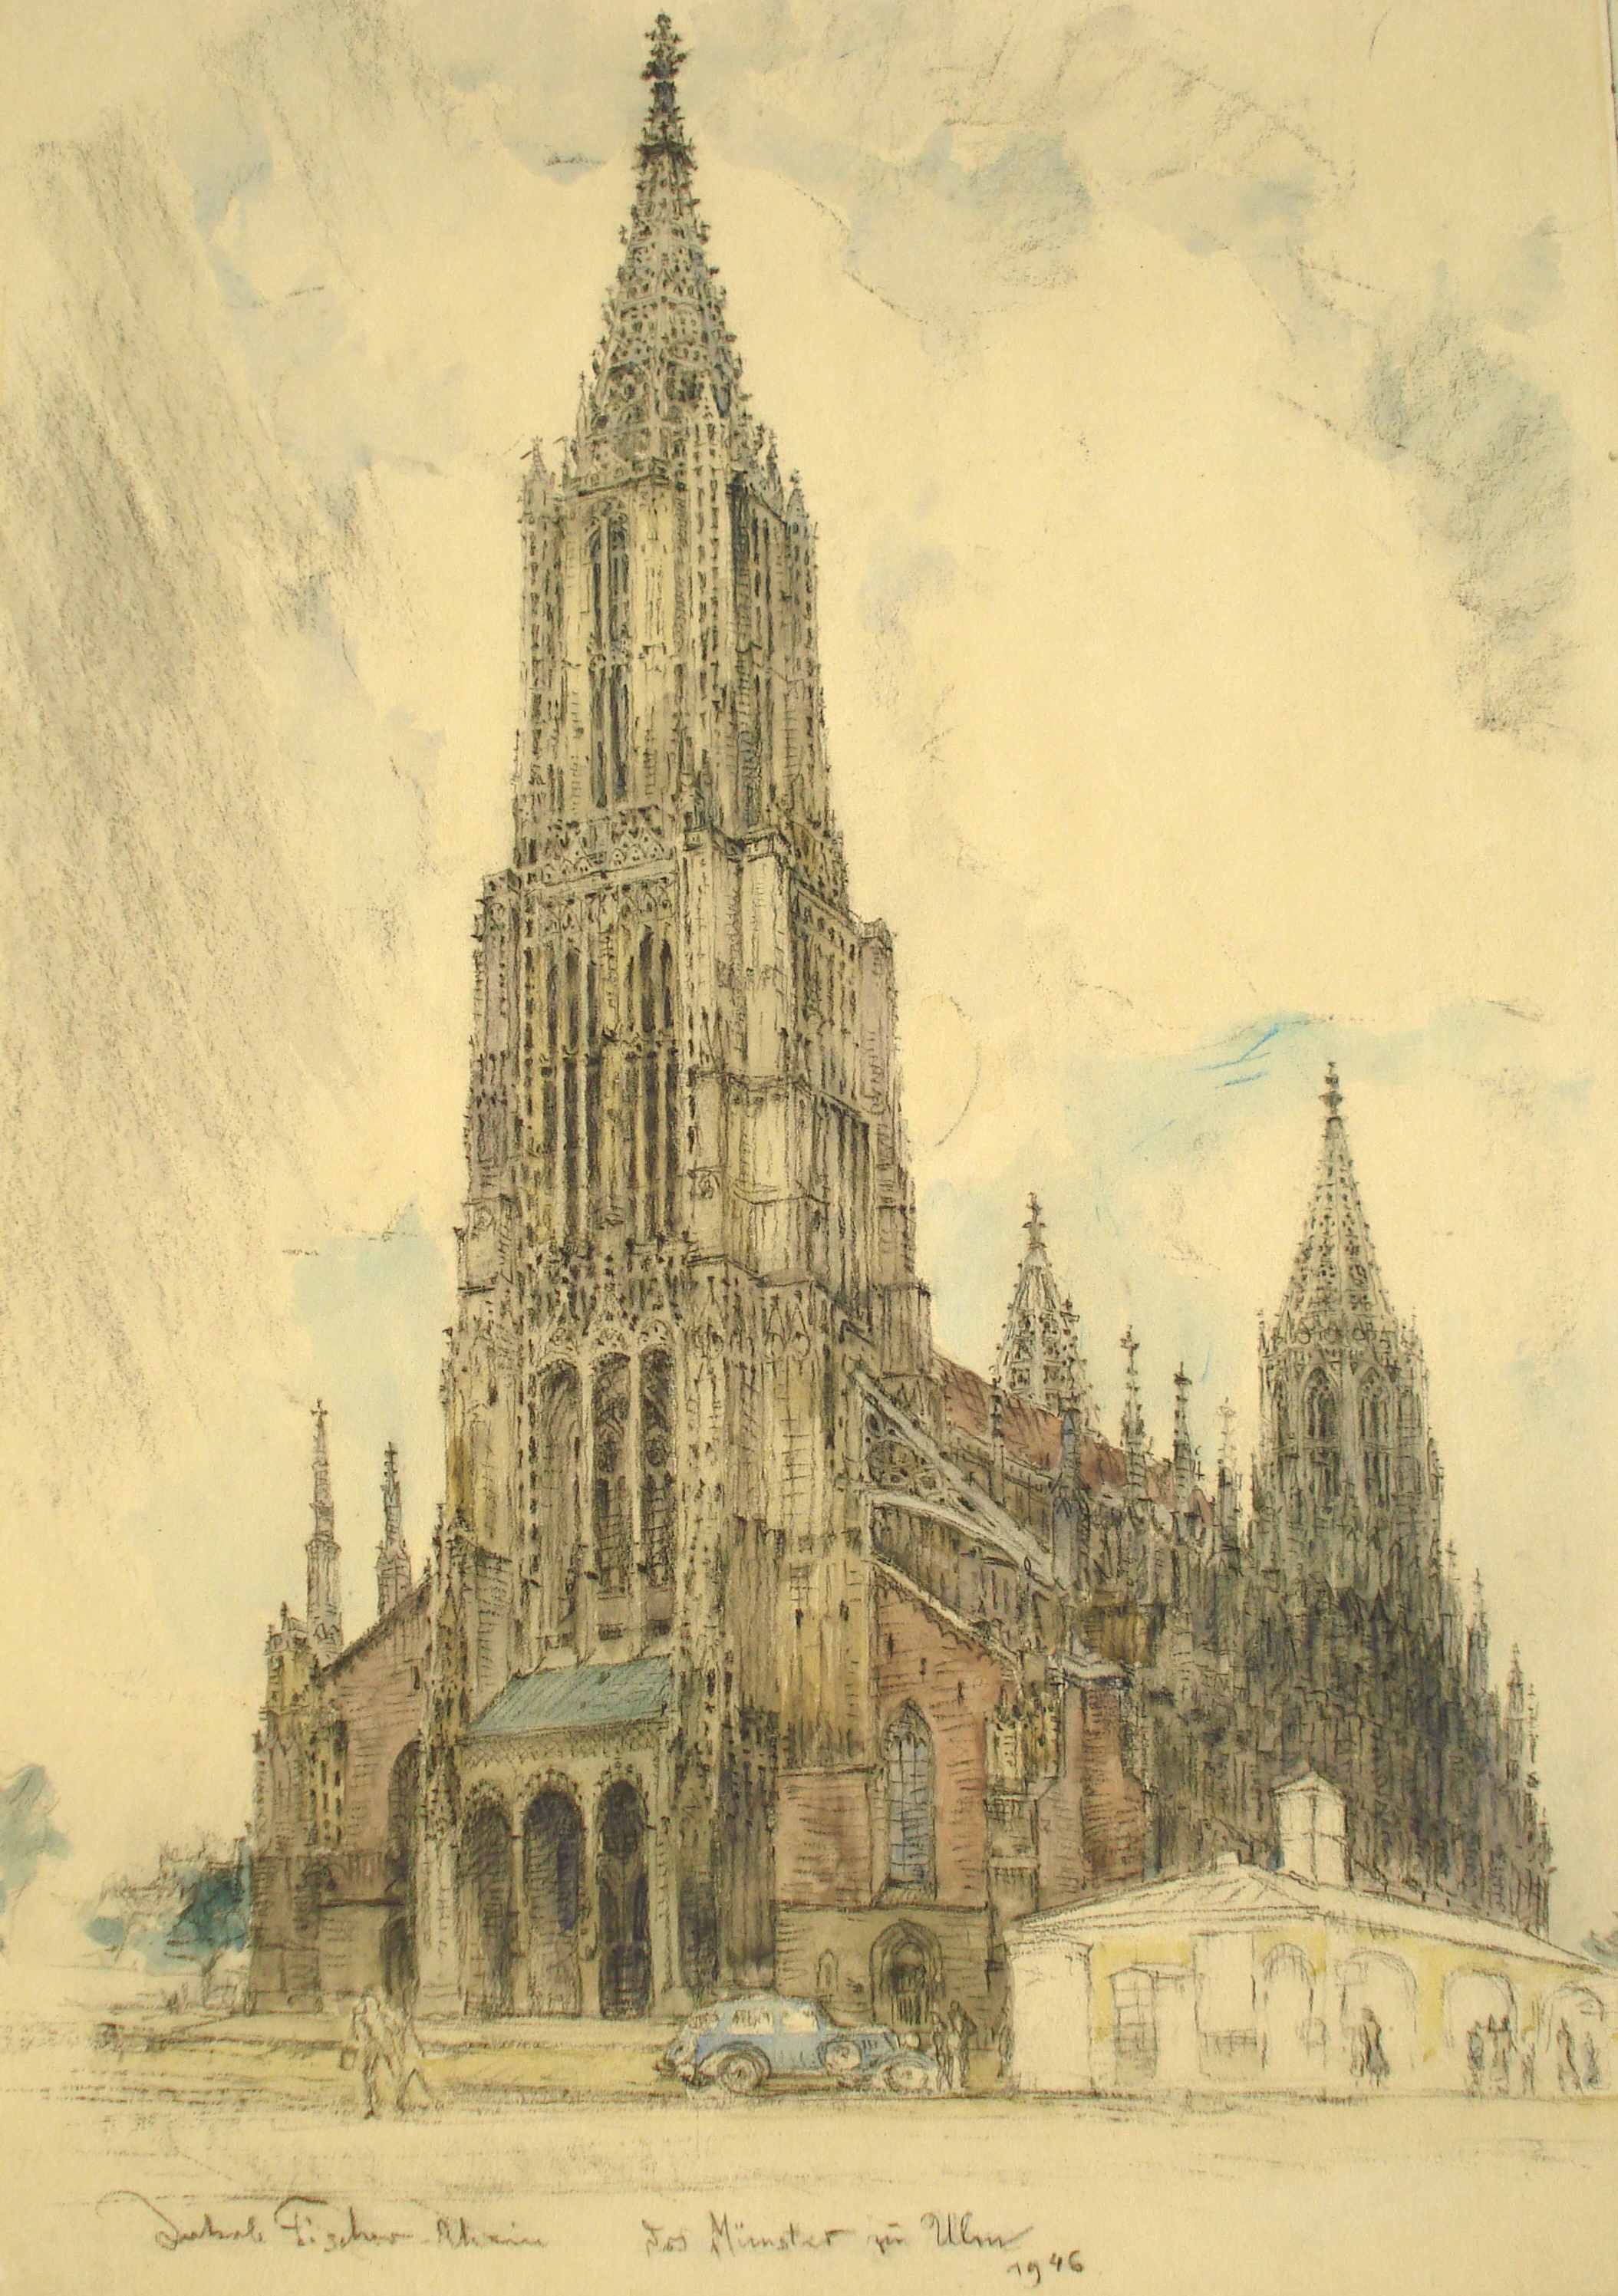 Das Münster zu Ulm, 1946, für vergrößerte Ansicht anklicken!